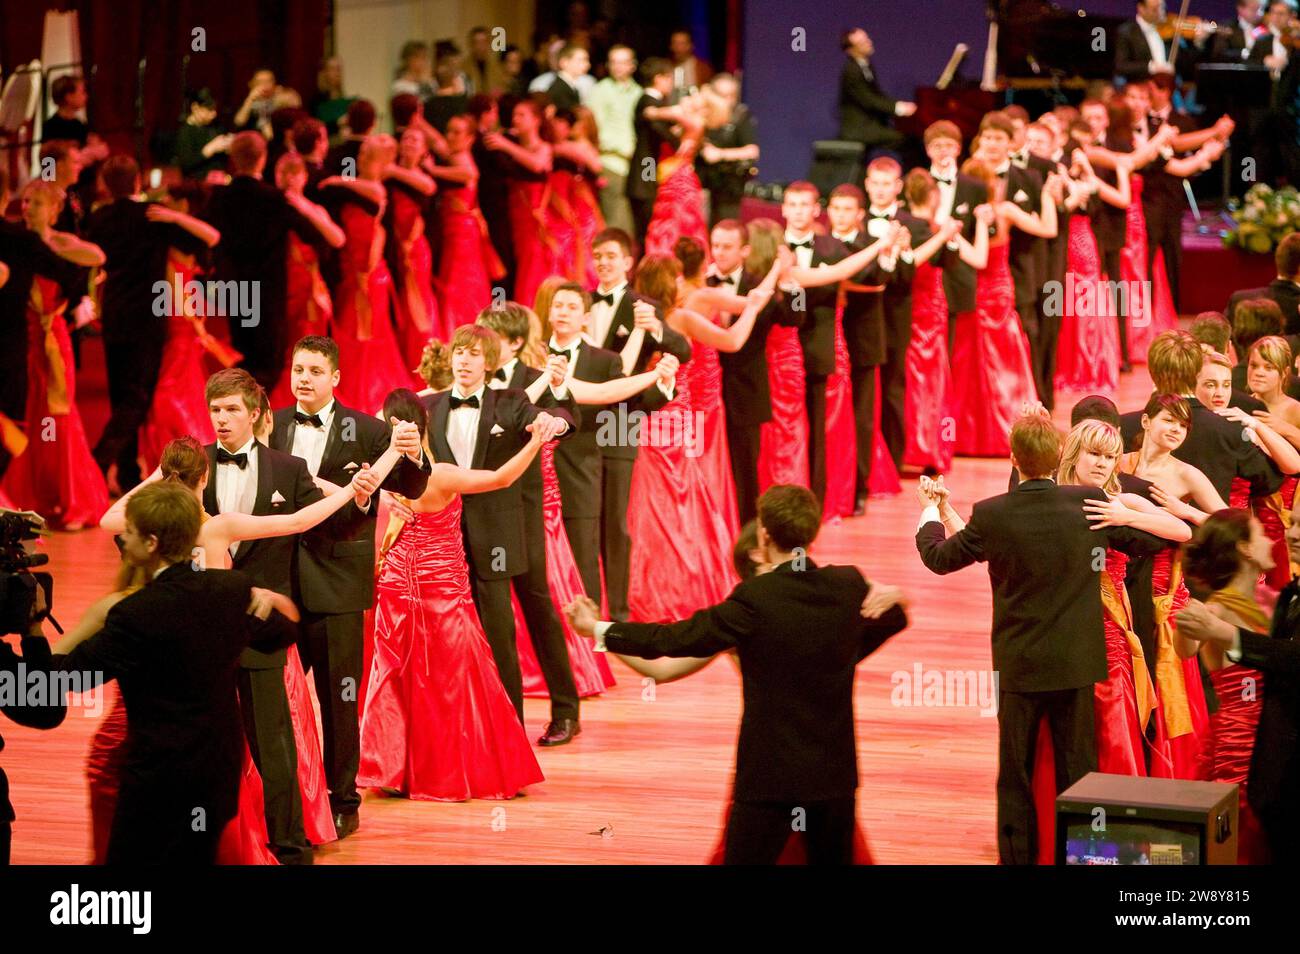 Débutantes au bal de l'Opéra de Semper. Après la tension de l'ouverture avec la valse viennoise, les débutantes dansent exubéramment à Perter Kraus Banque D'Images